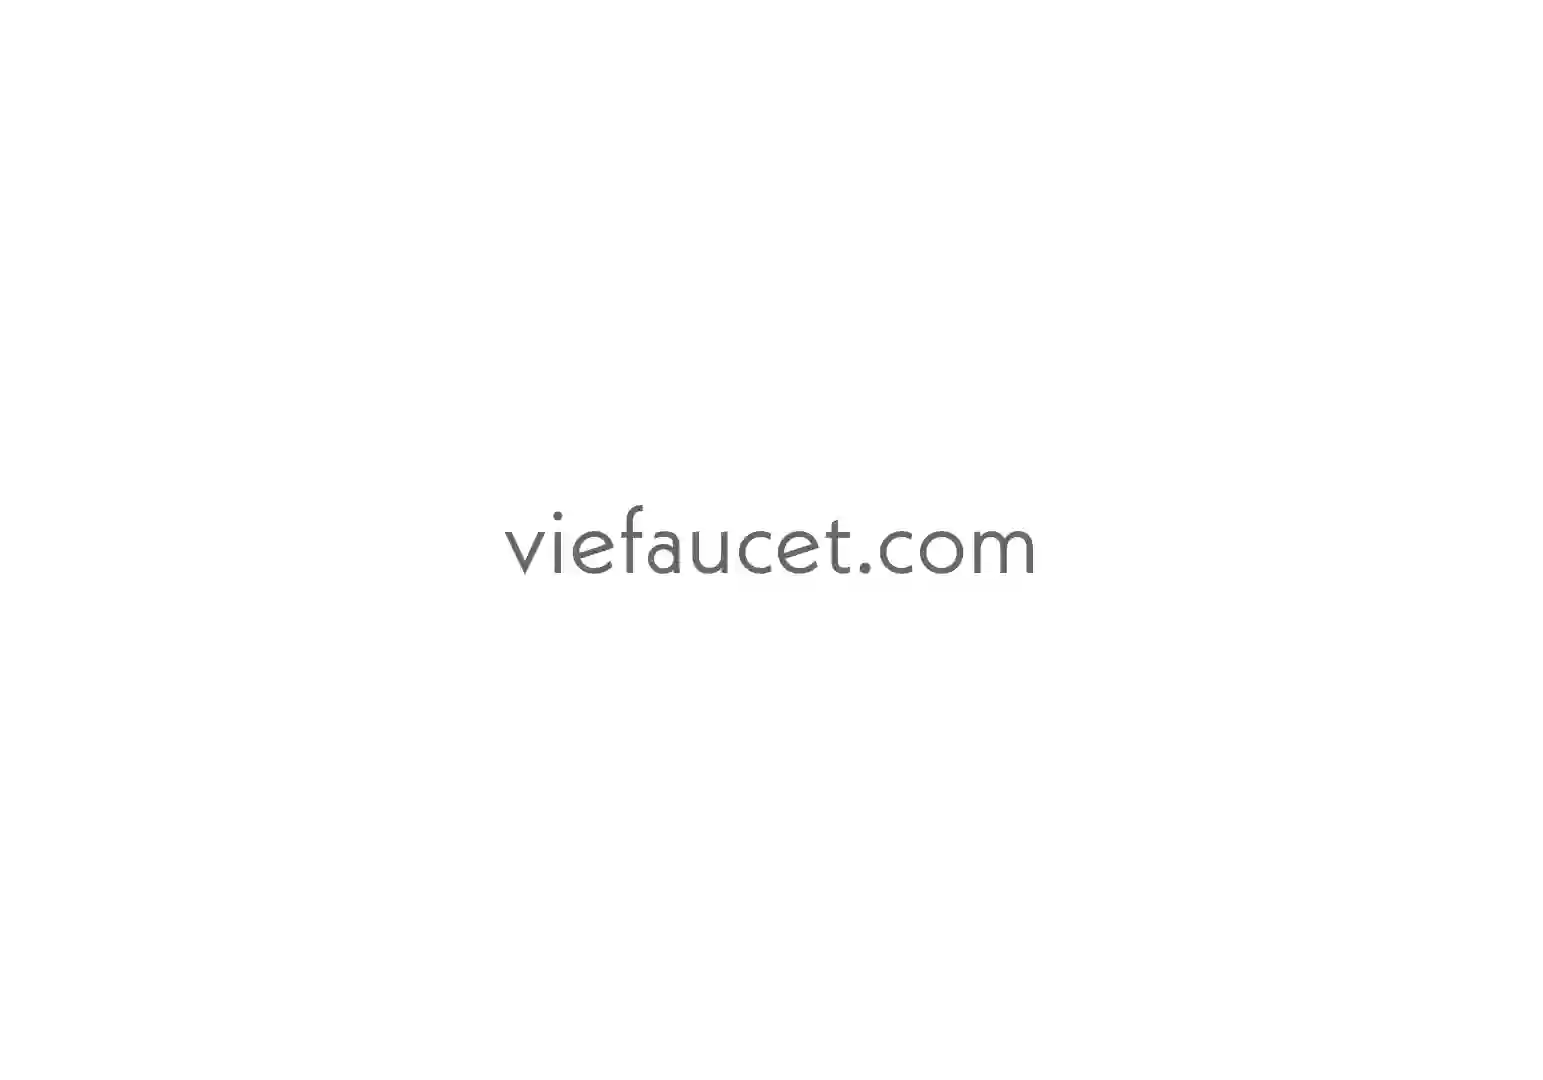 viefaucet.com